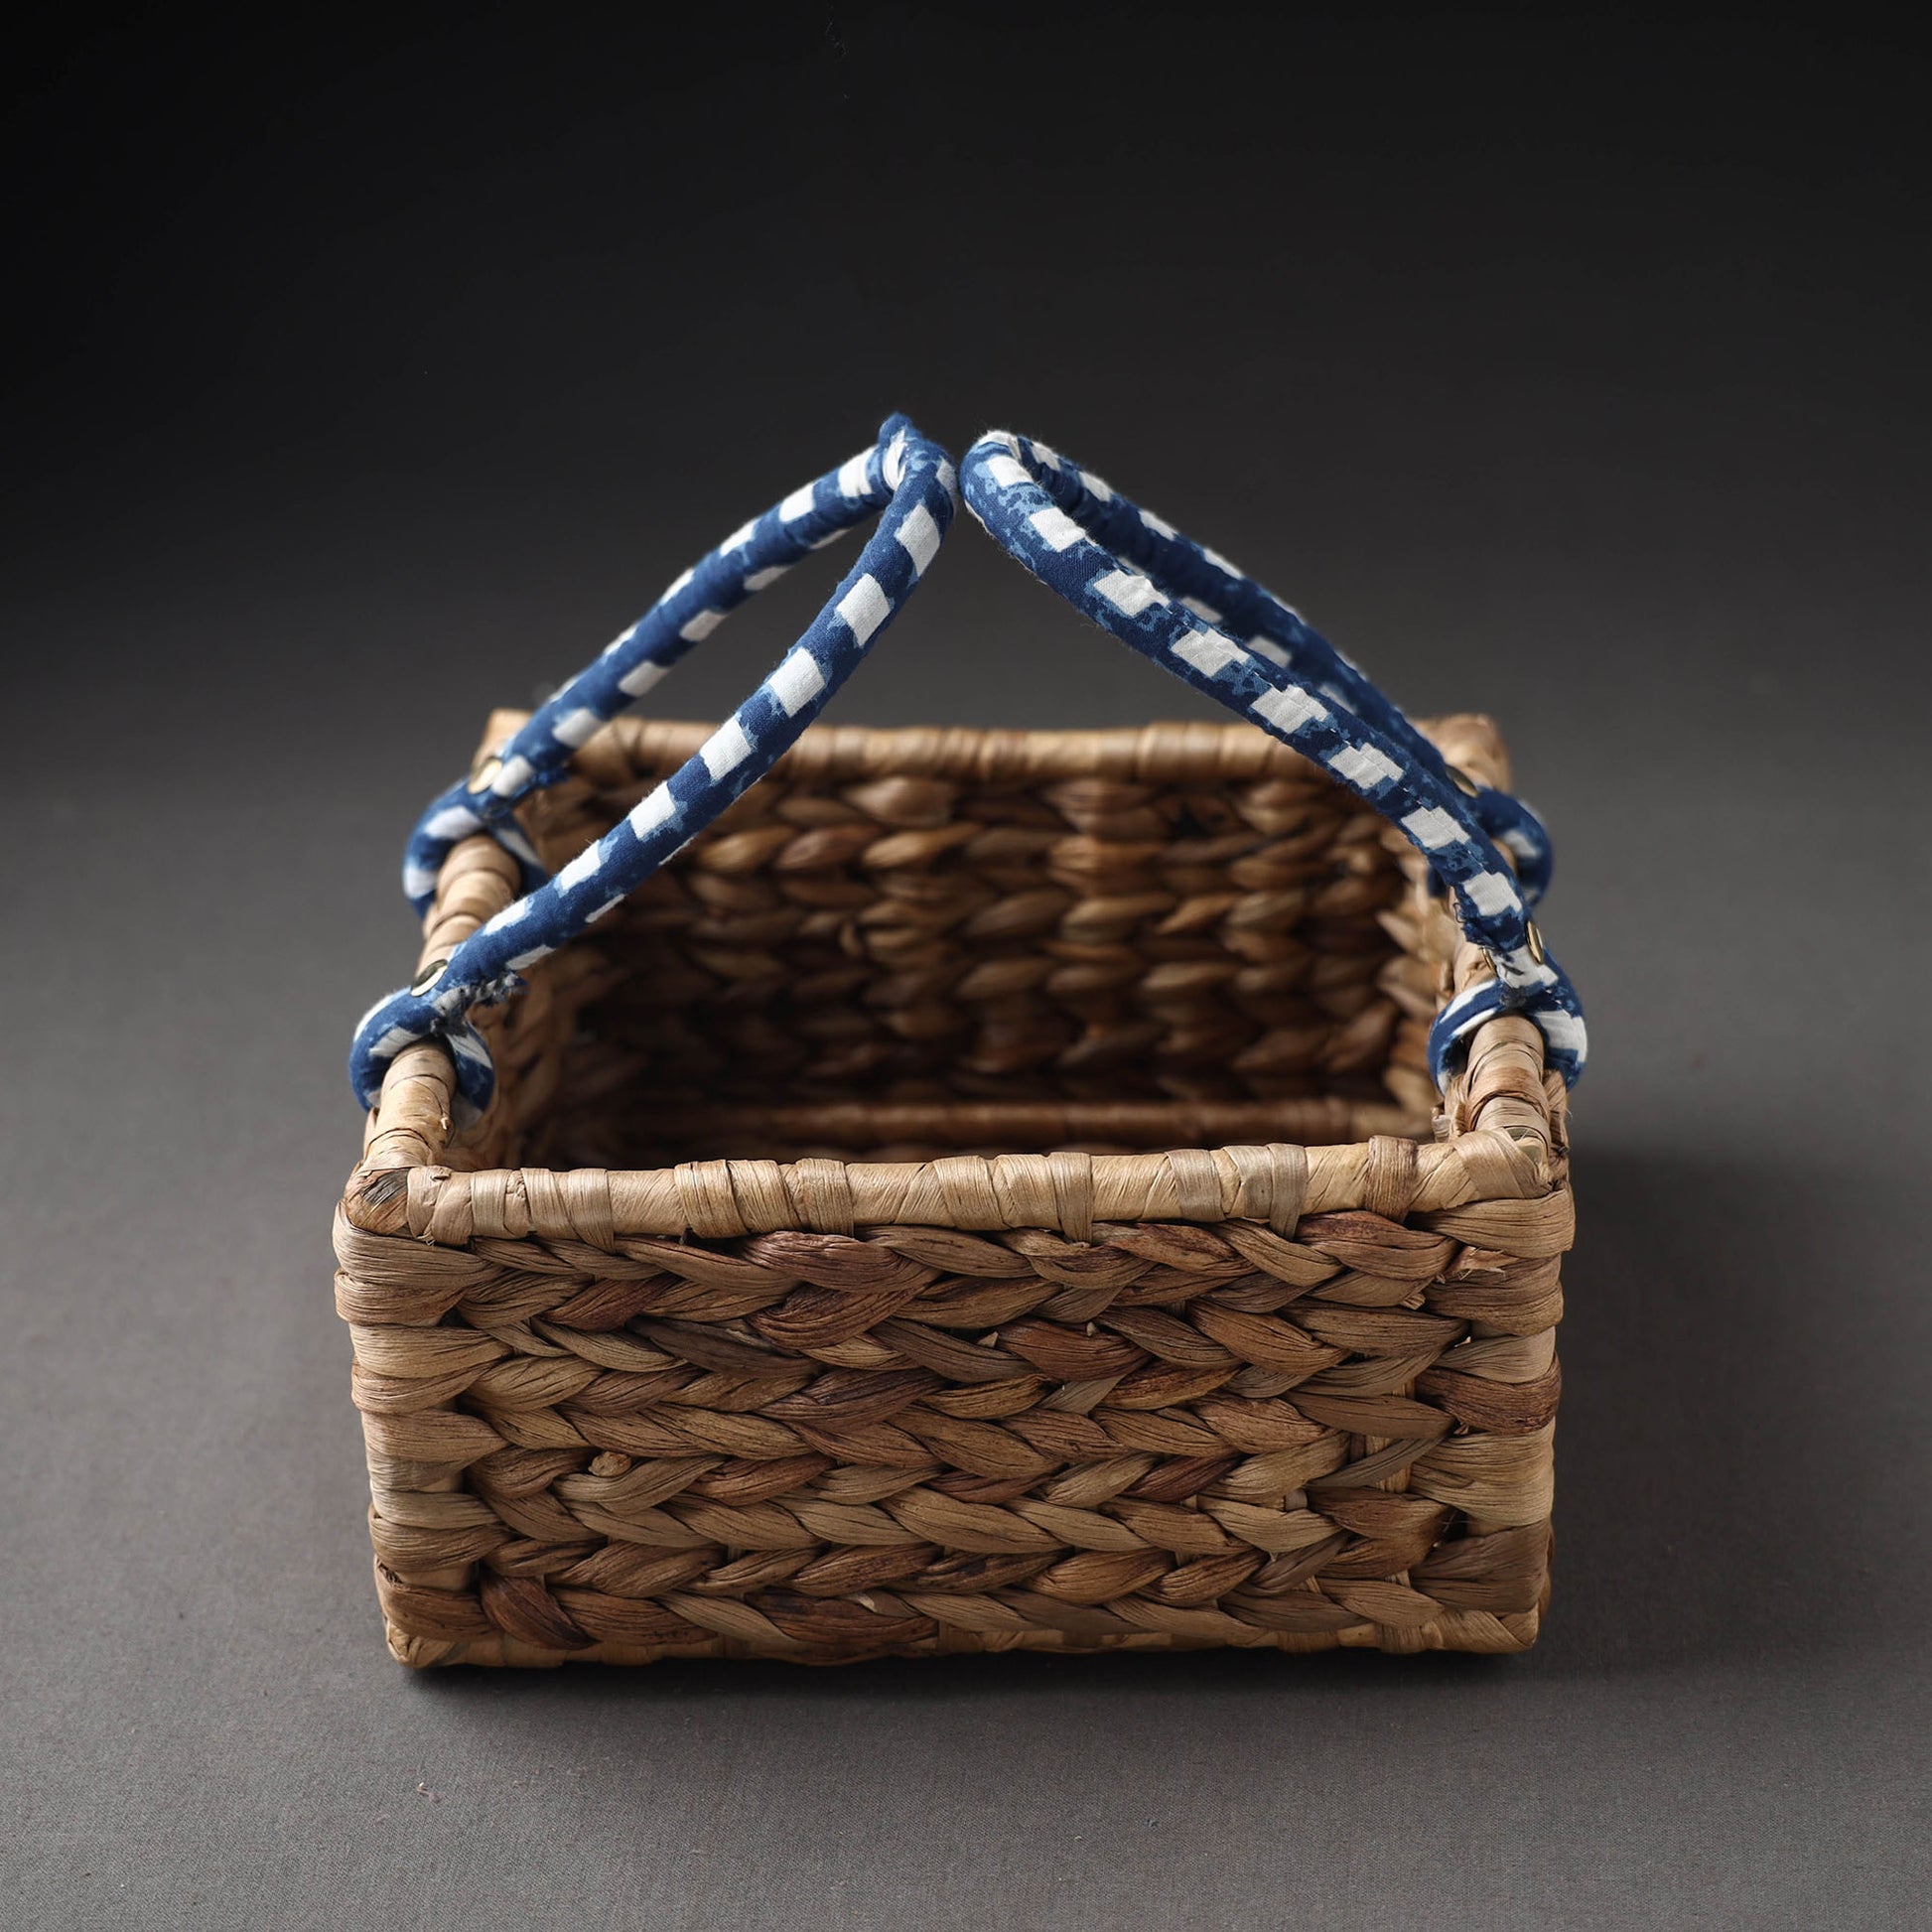 Water Hyacinth Basket
